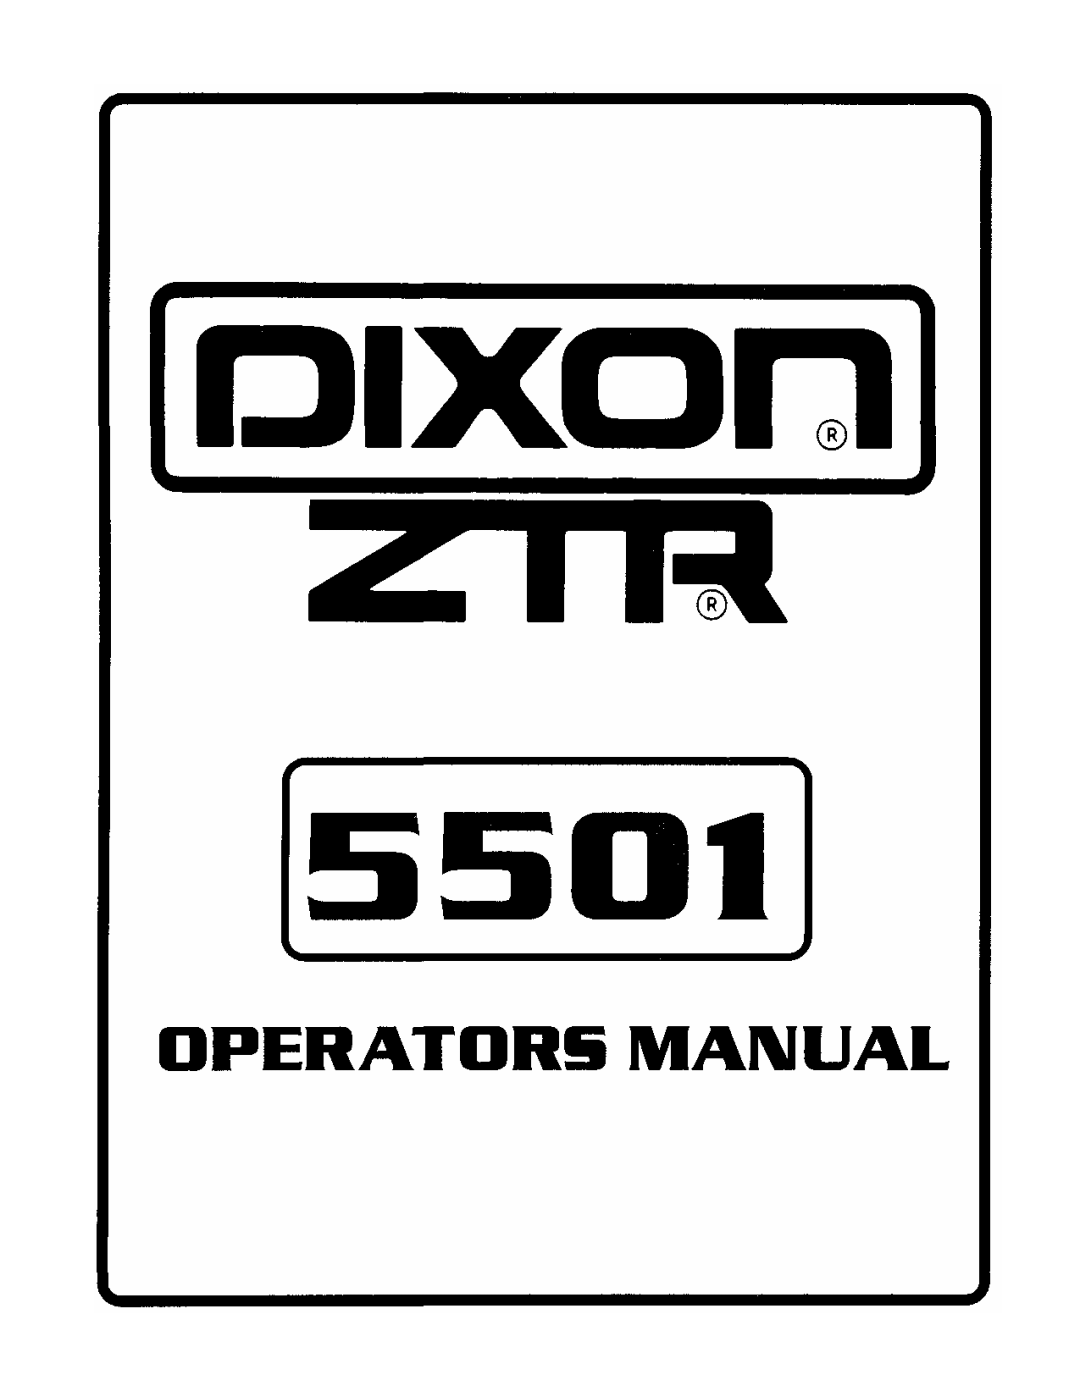 Dixon 5501 manual 